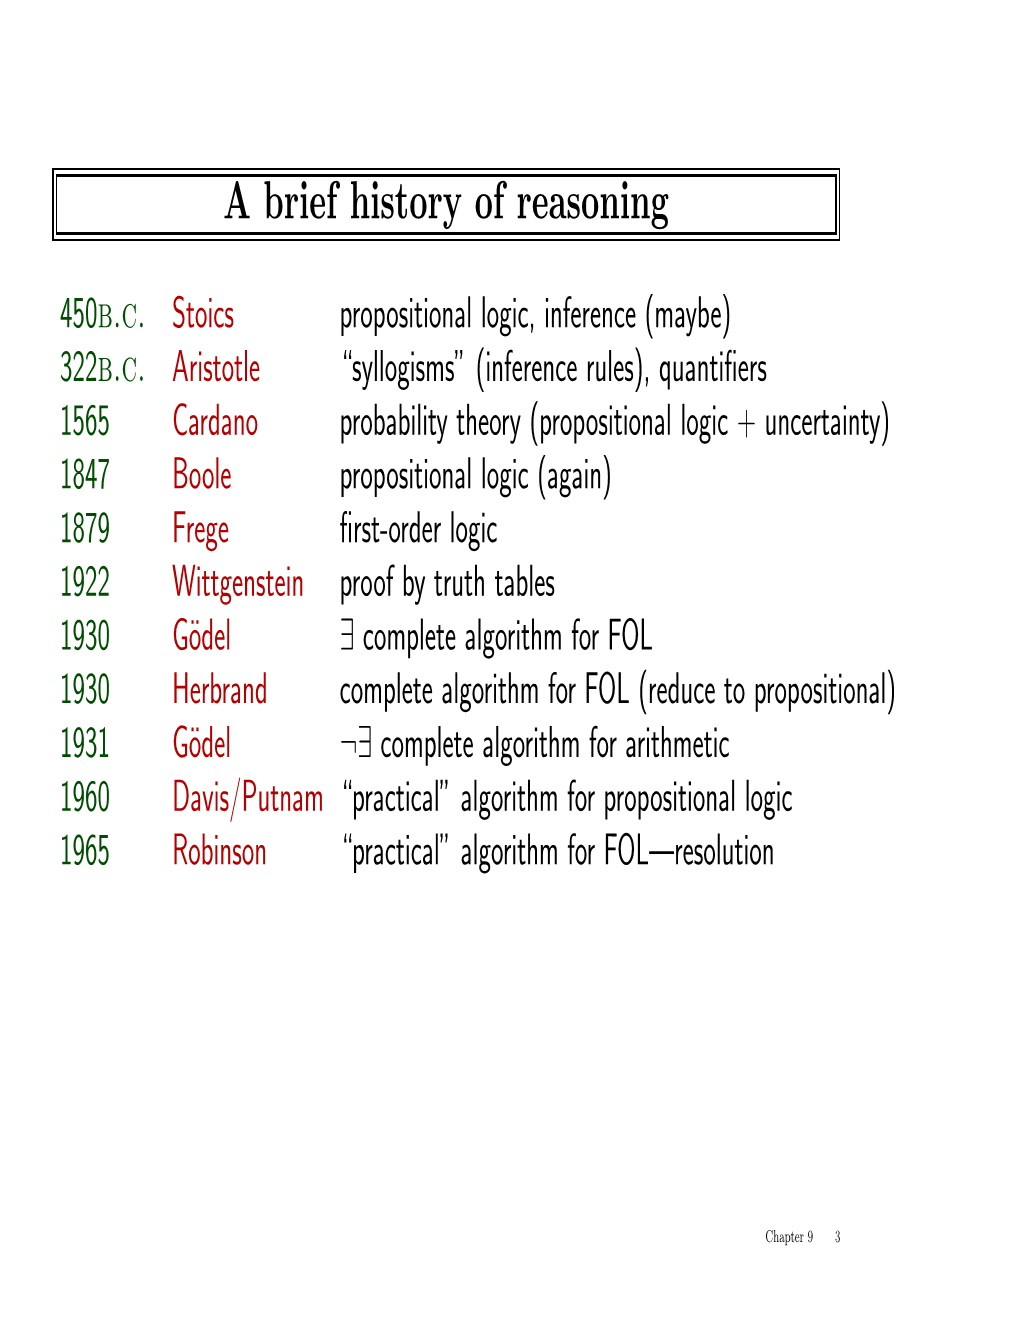 A Brief History of Reasoning